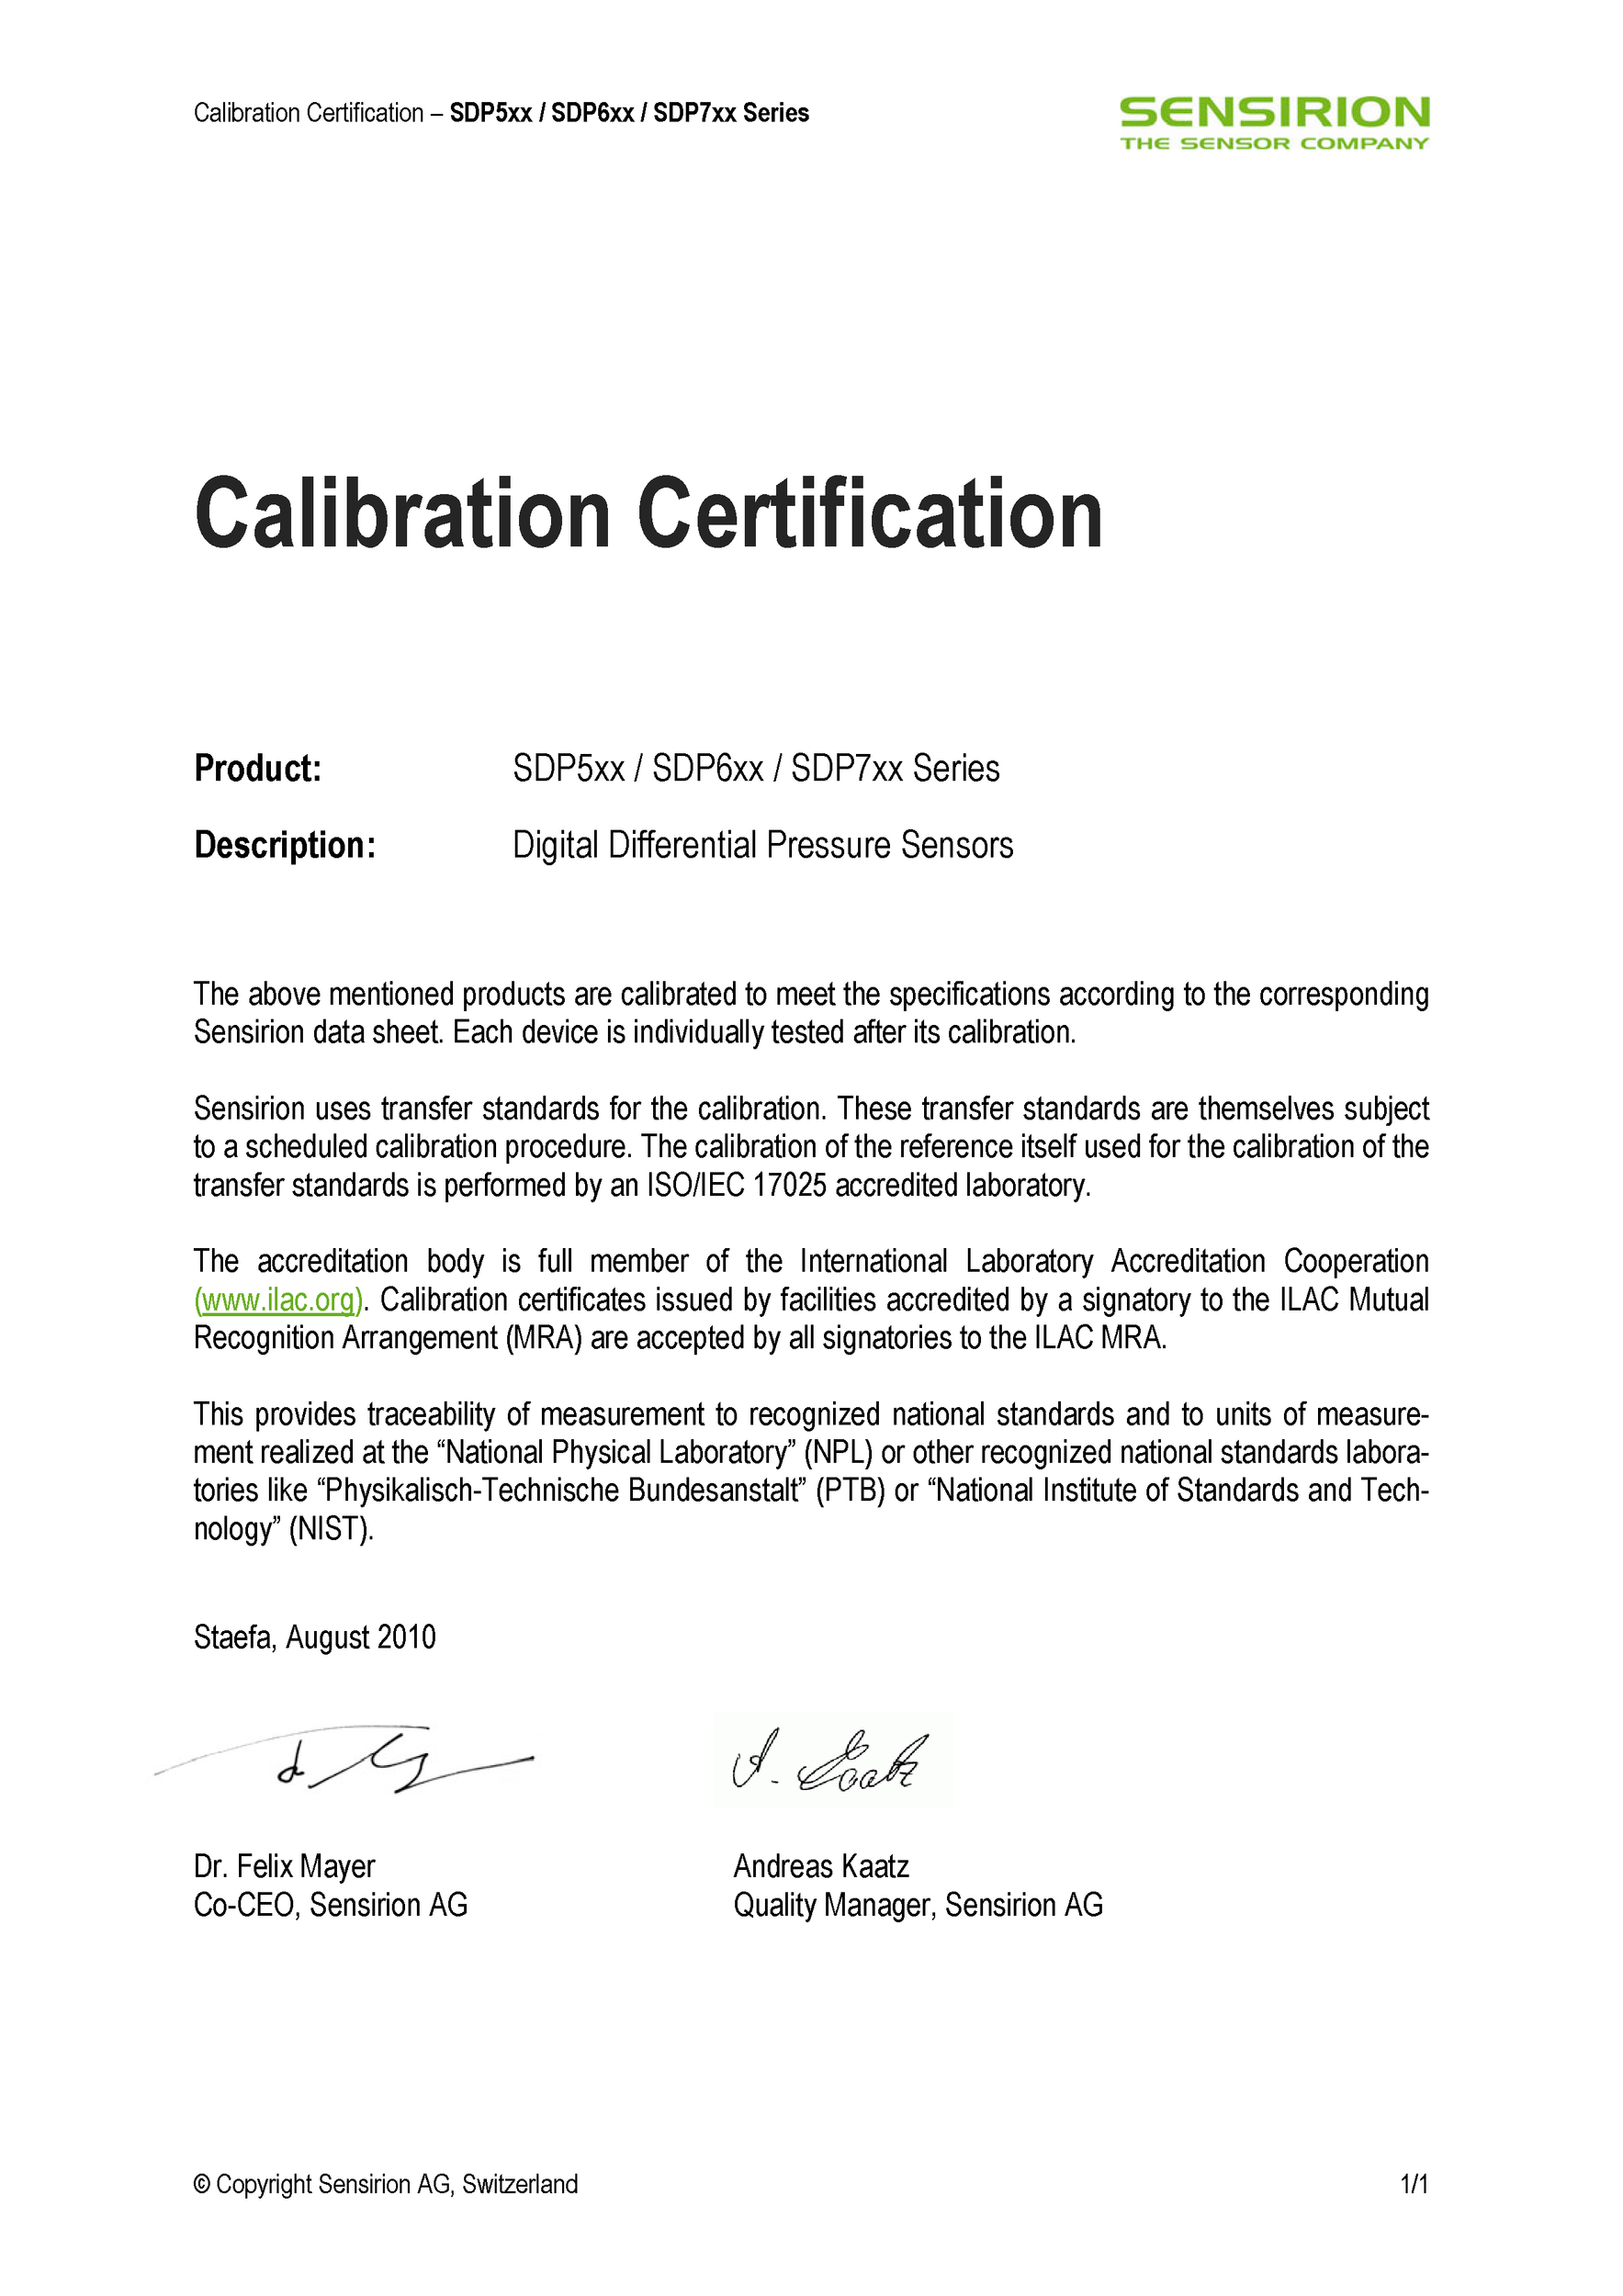 Sensirion_Differential_Pressure_Sensors_SDP600Series_Calibration_Certification__1_.pdf